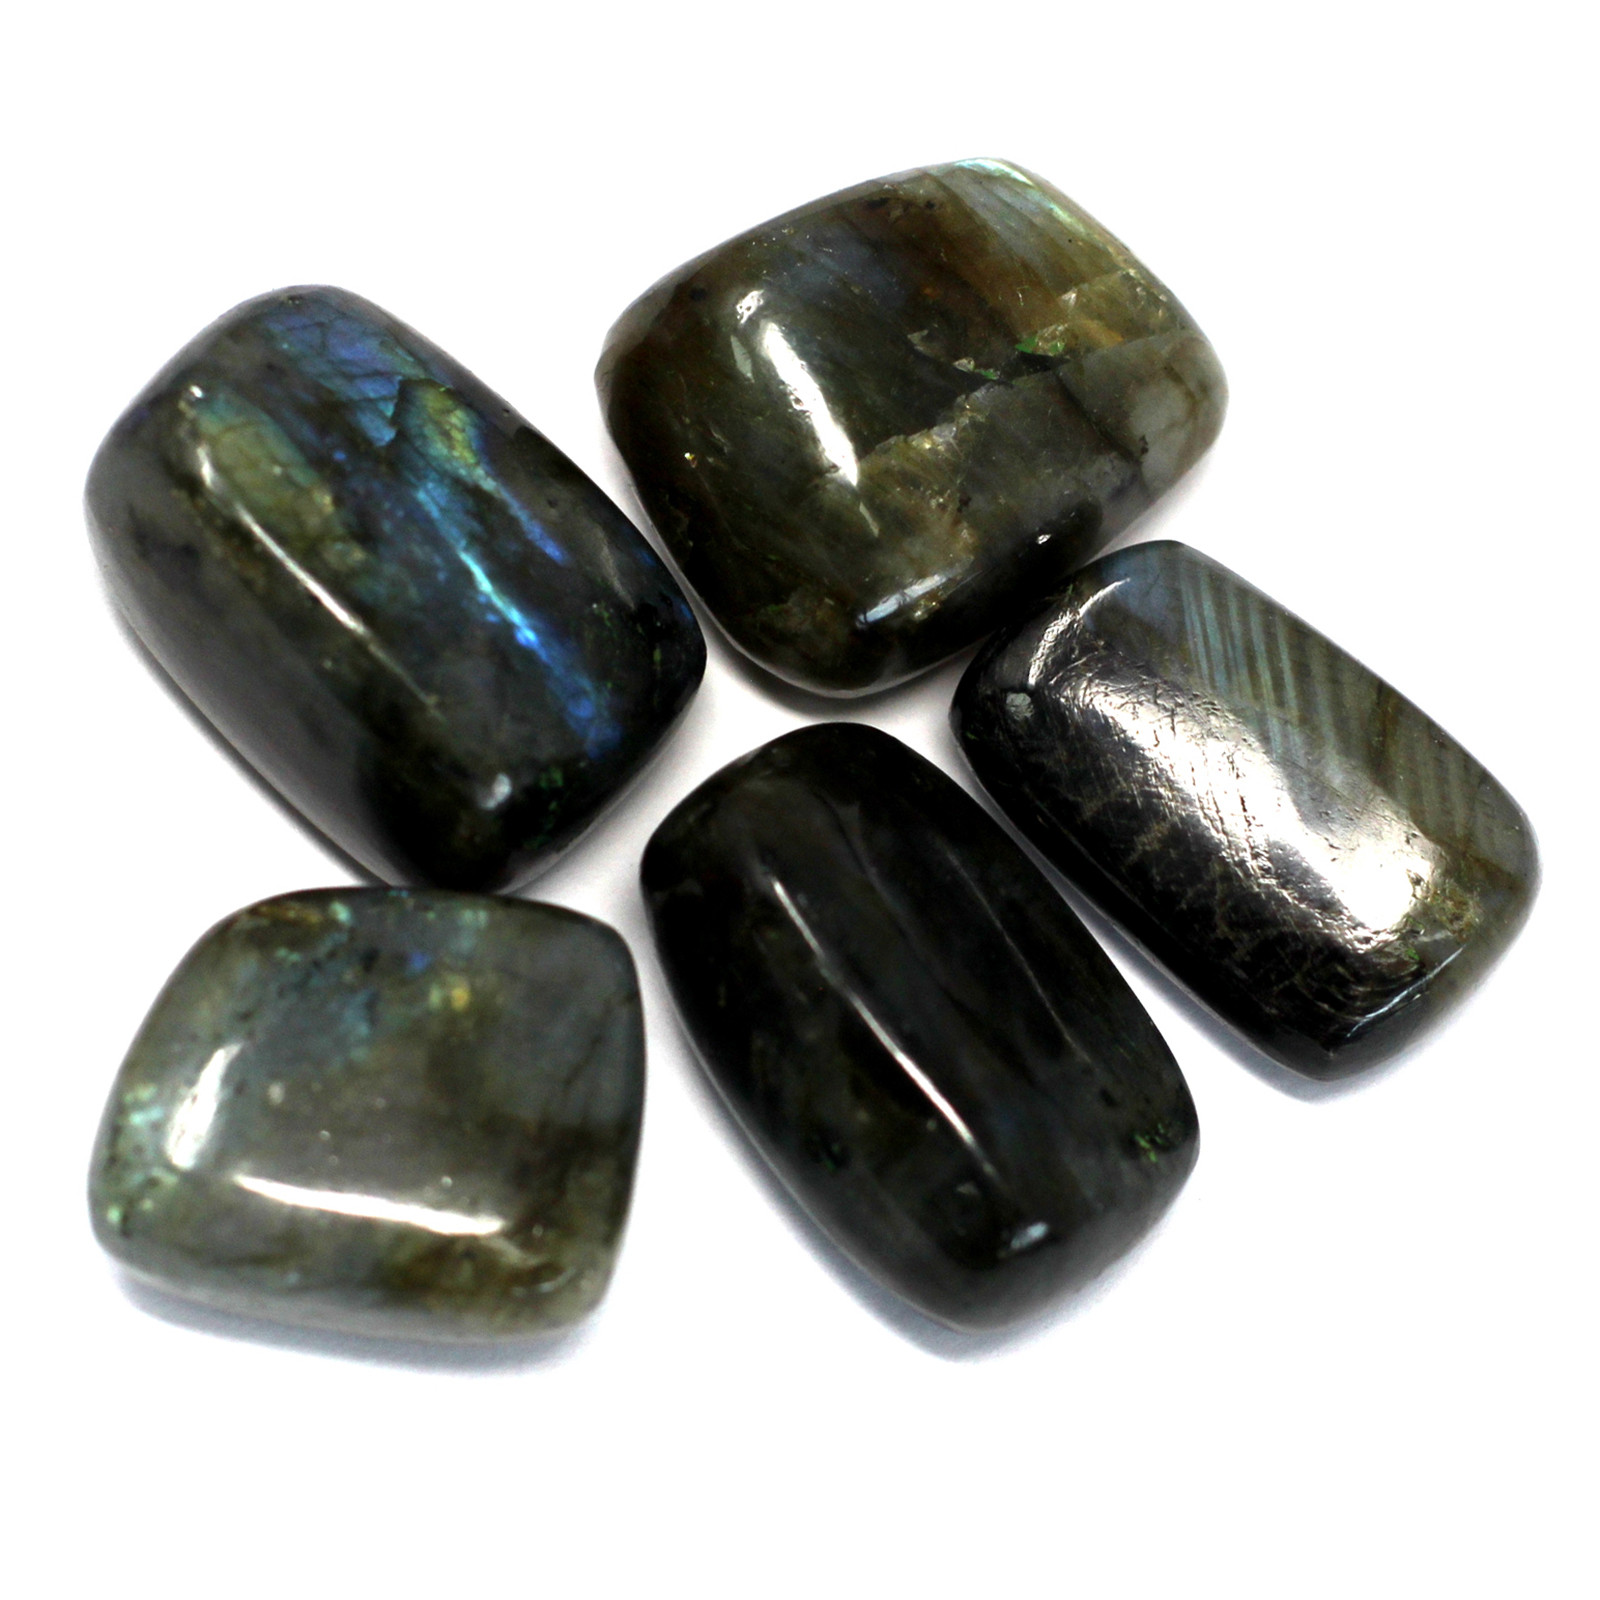 4 x Premium Tumble Stones - Labrodite